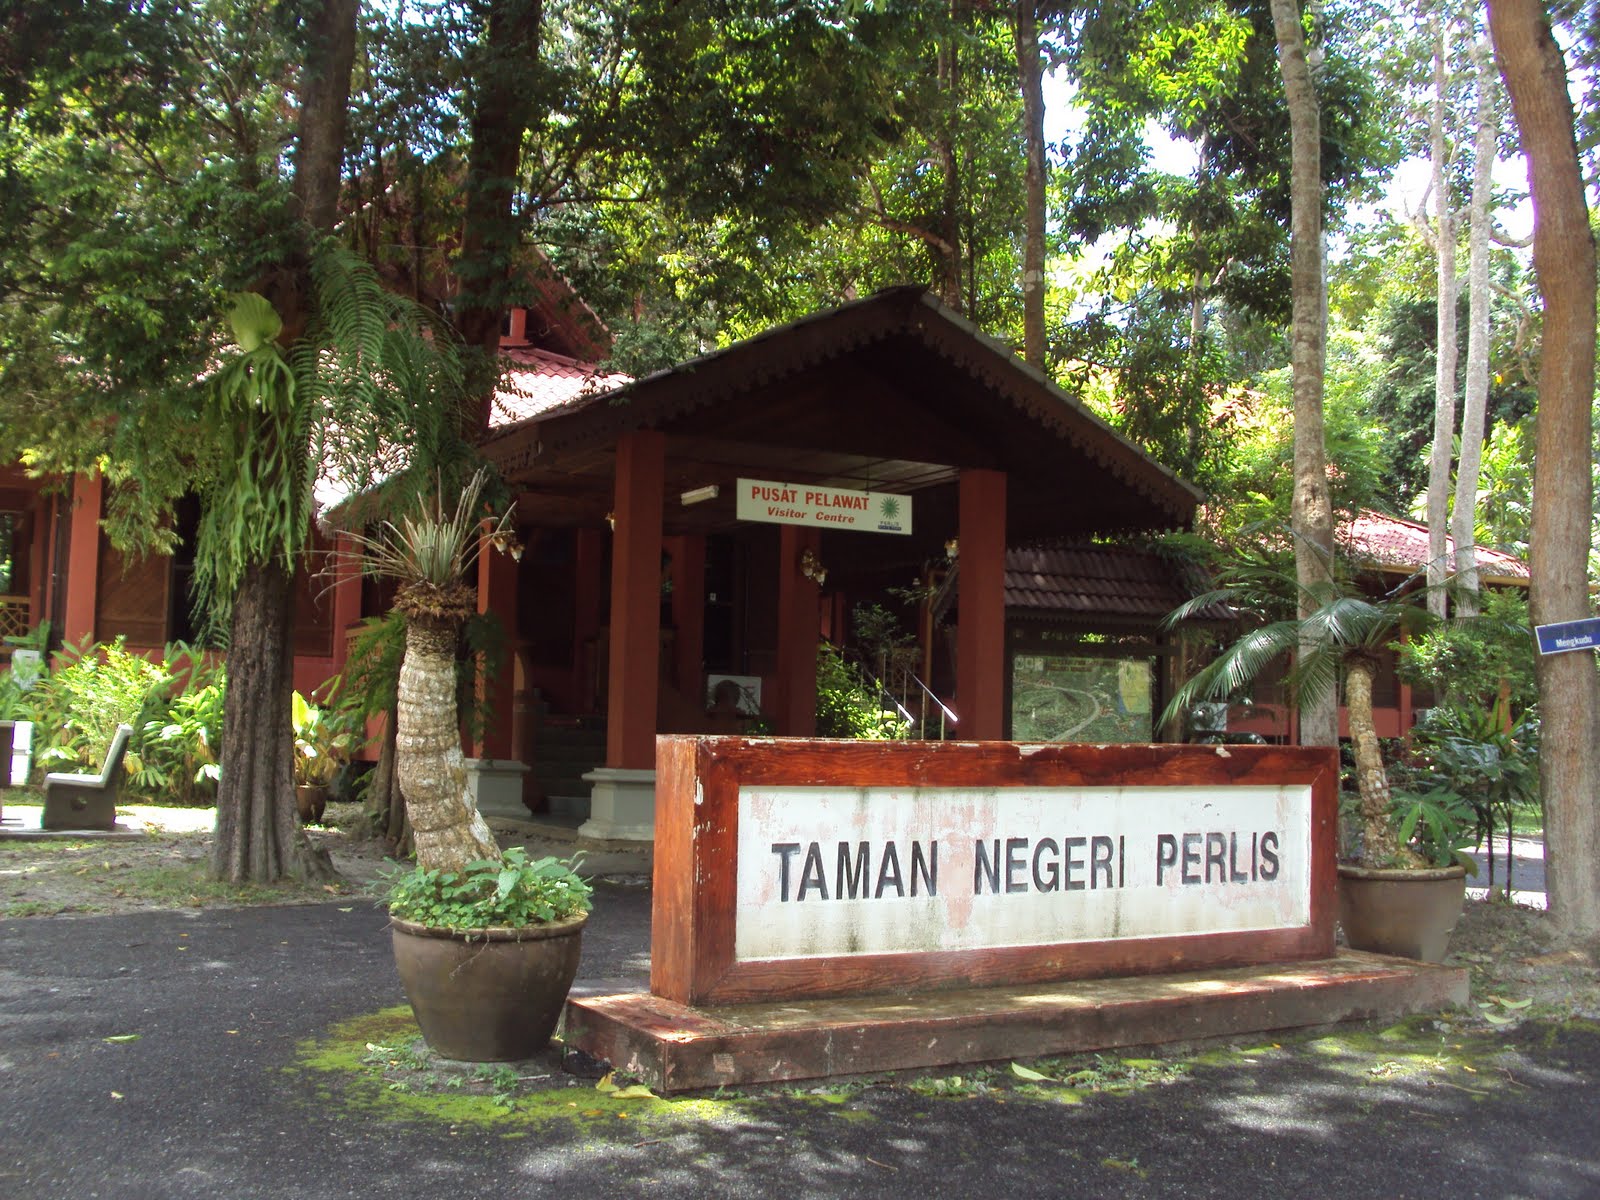  حديقة برليس الوطنية في  ولاية بيرلس ماليزيا